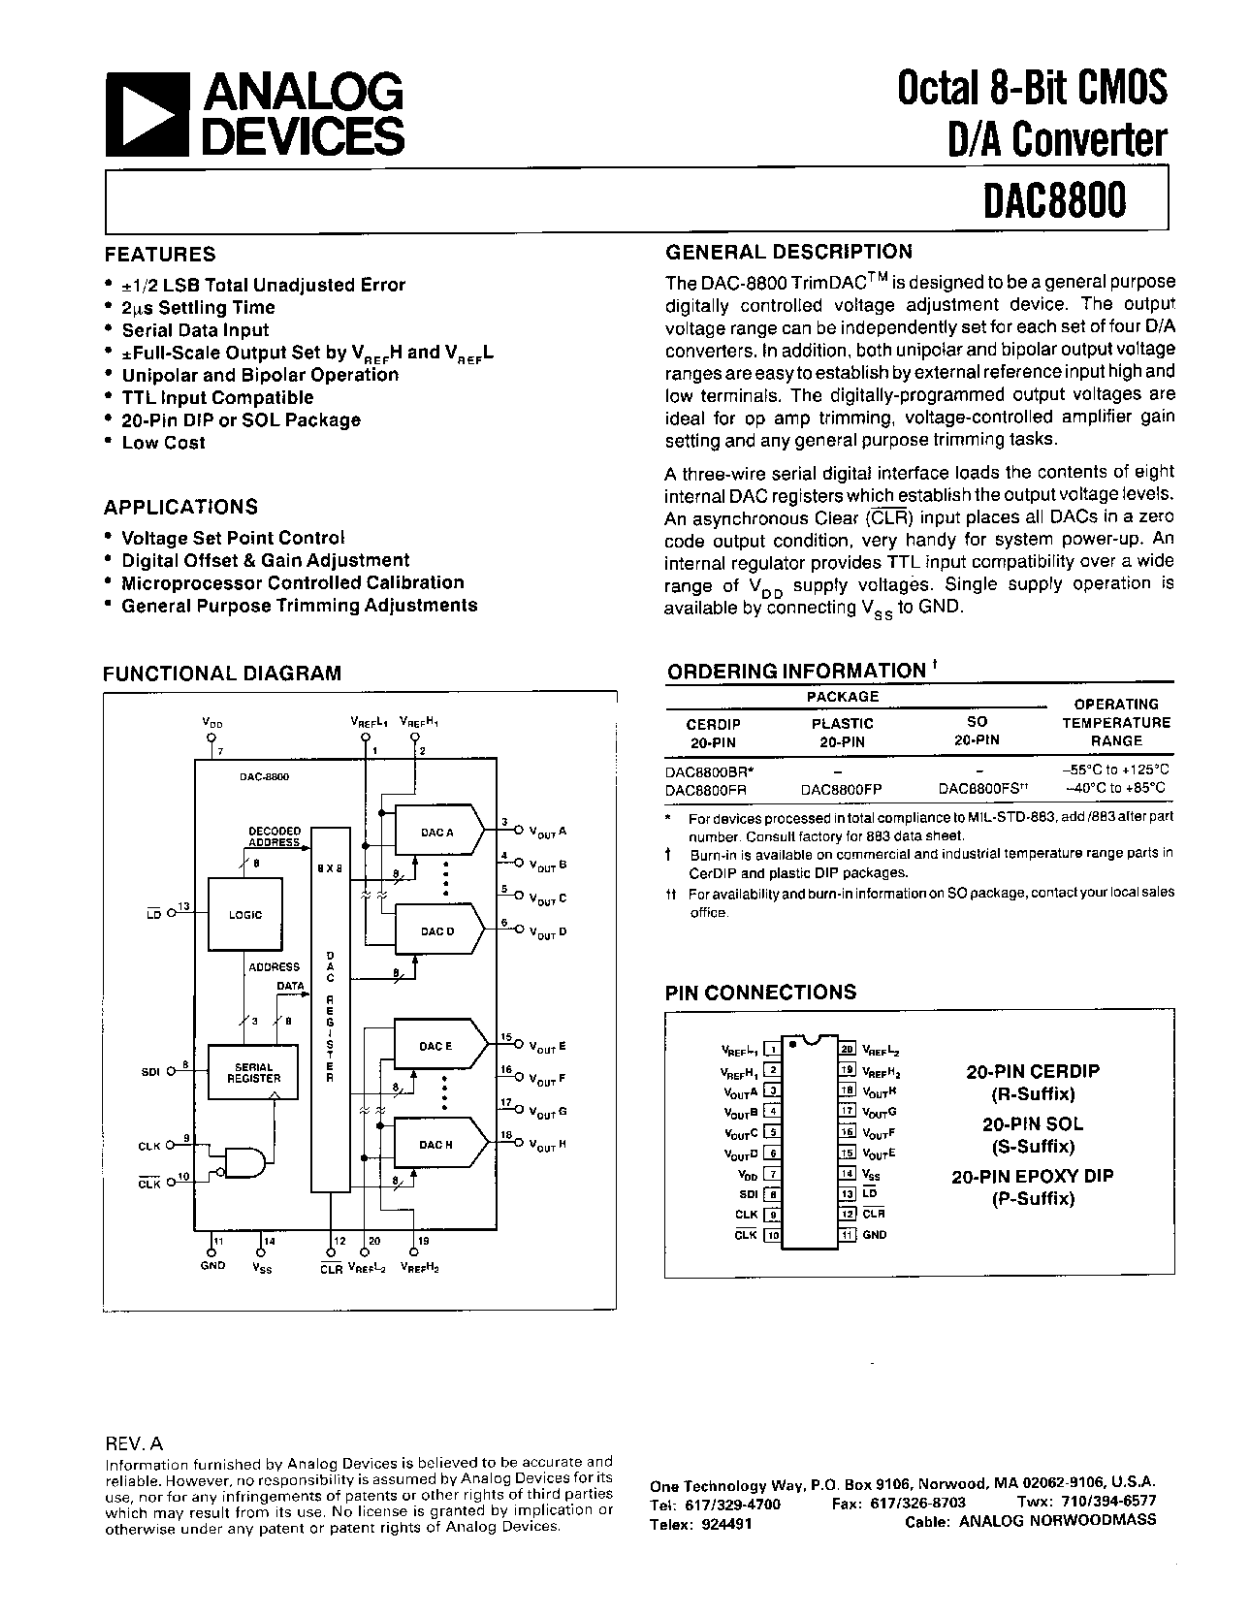 Analog Devices DAC8800 Datasheet